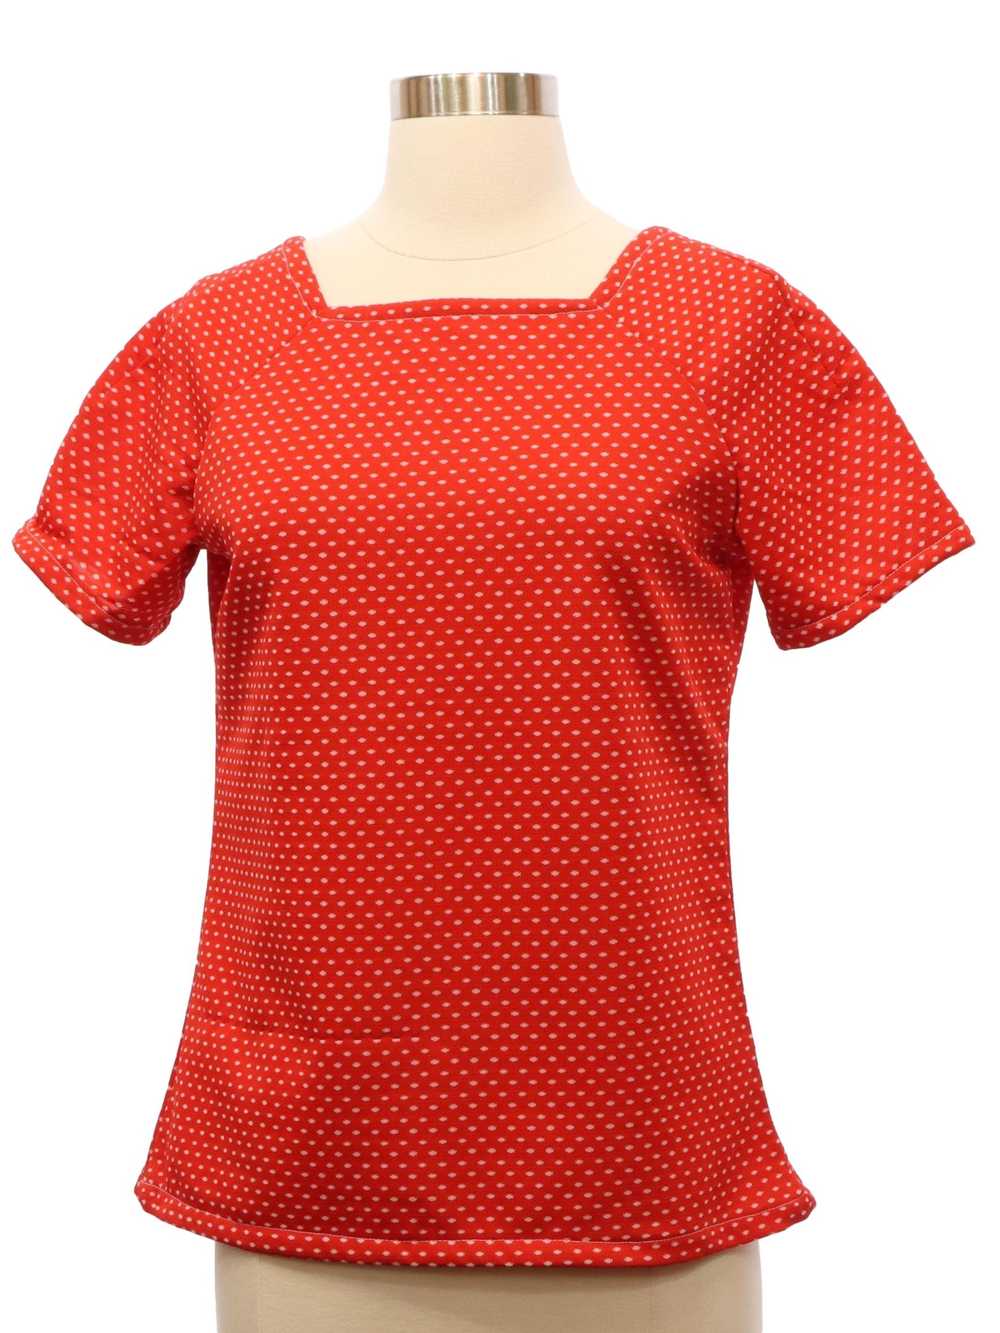 1970's Womens Knit Shirt - image 1